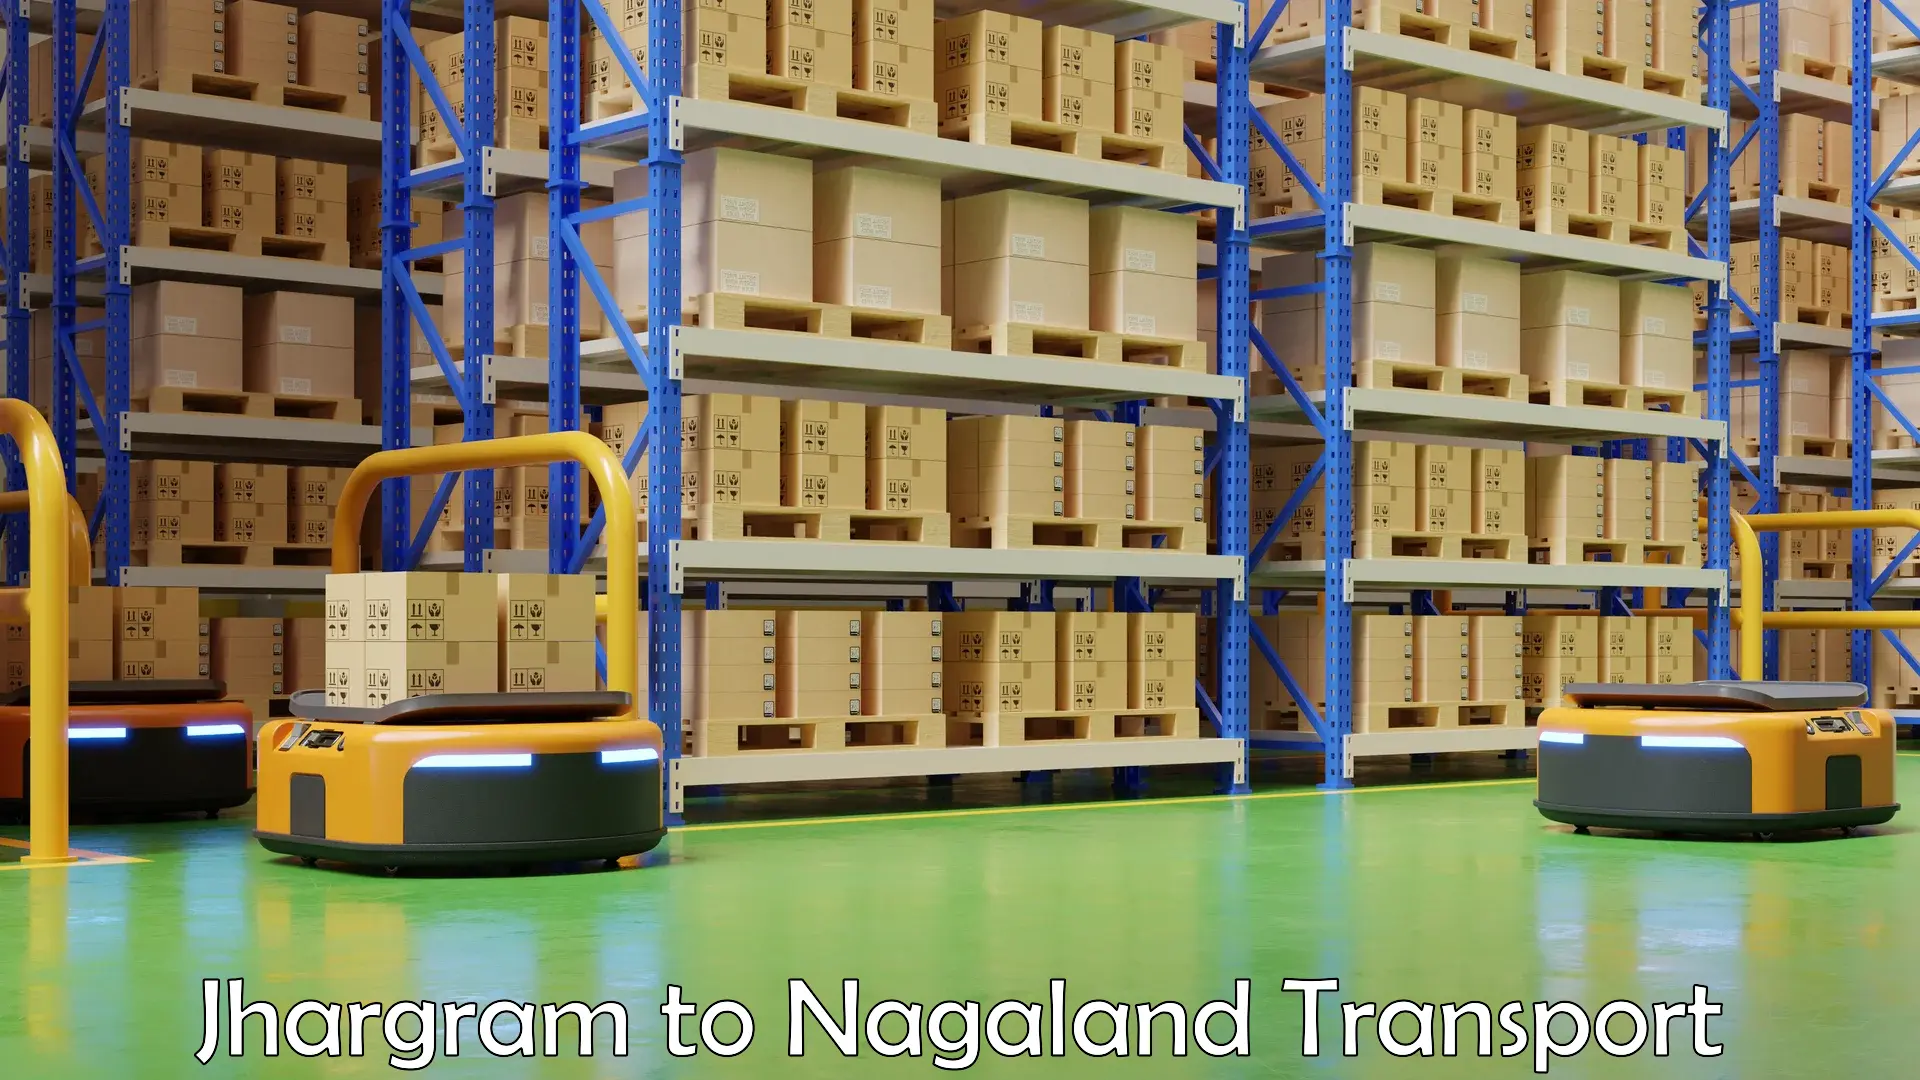 Furniture transport service Jhargram to Nagaland